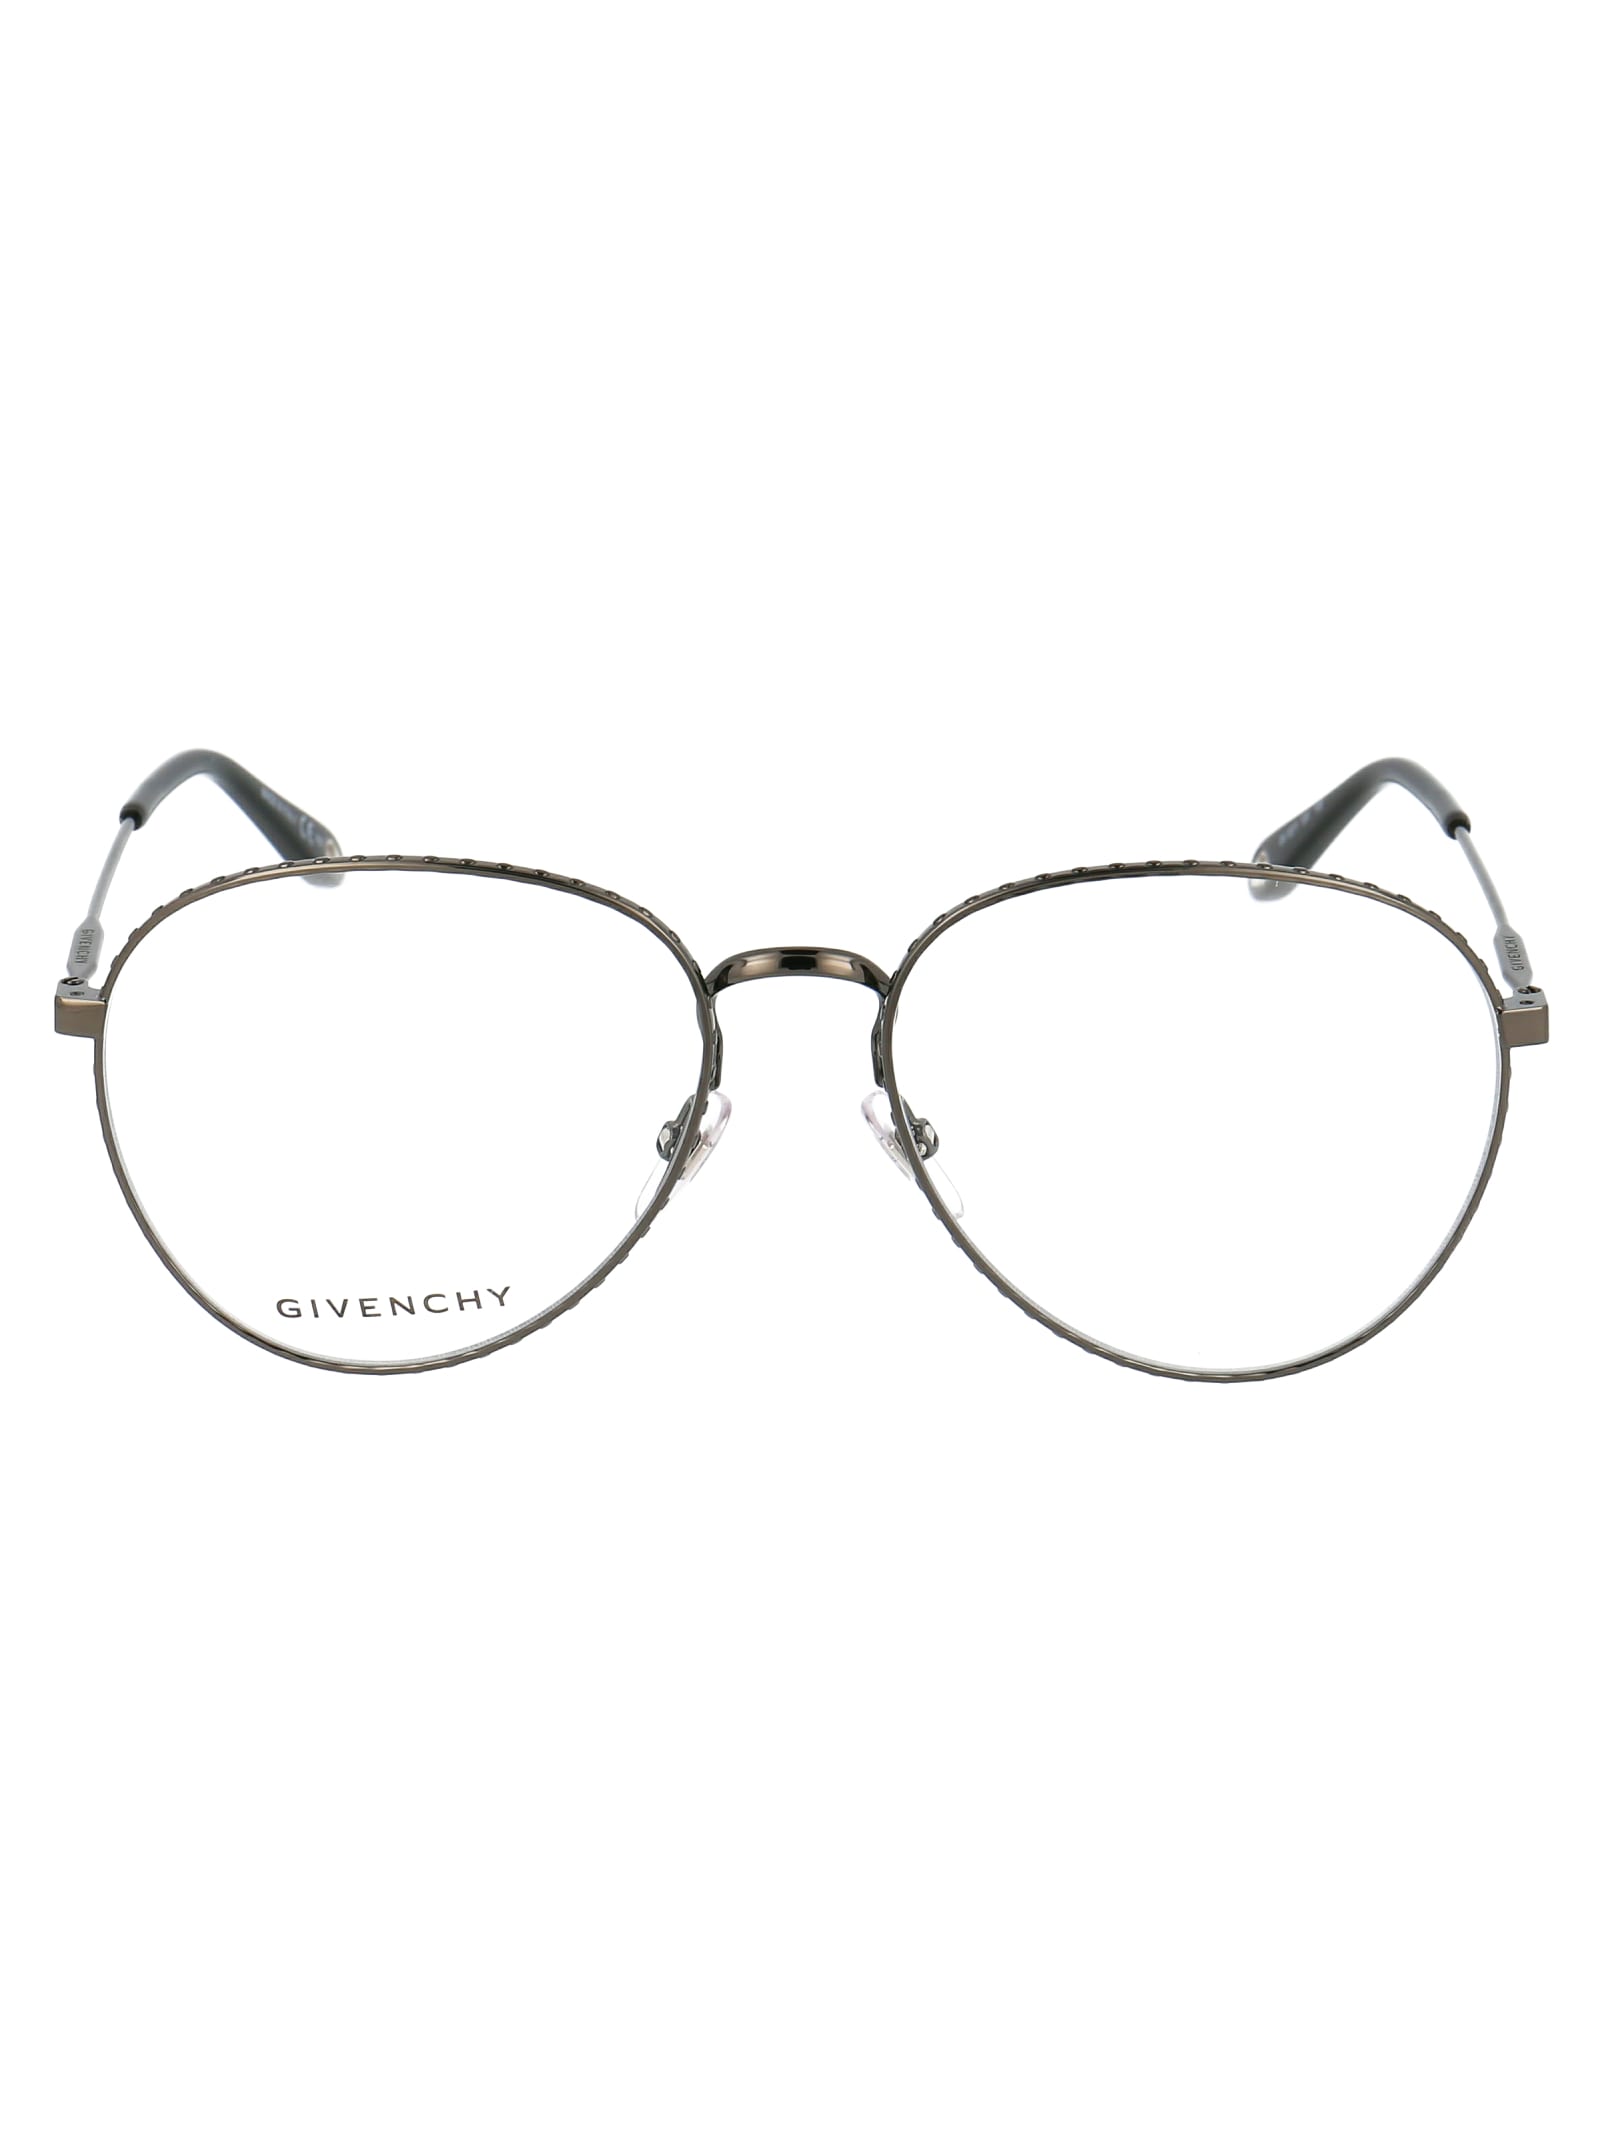 Givenchy Eyewear Gv 0071 Glasses